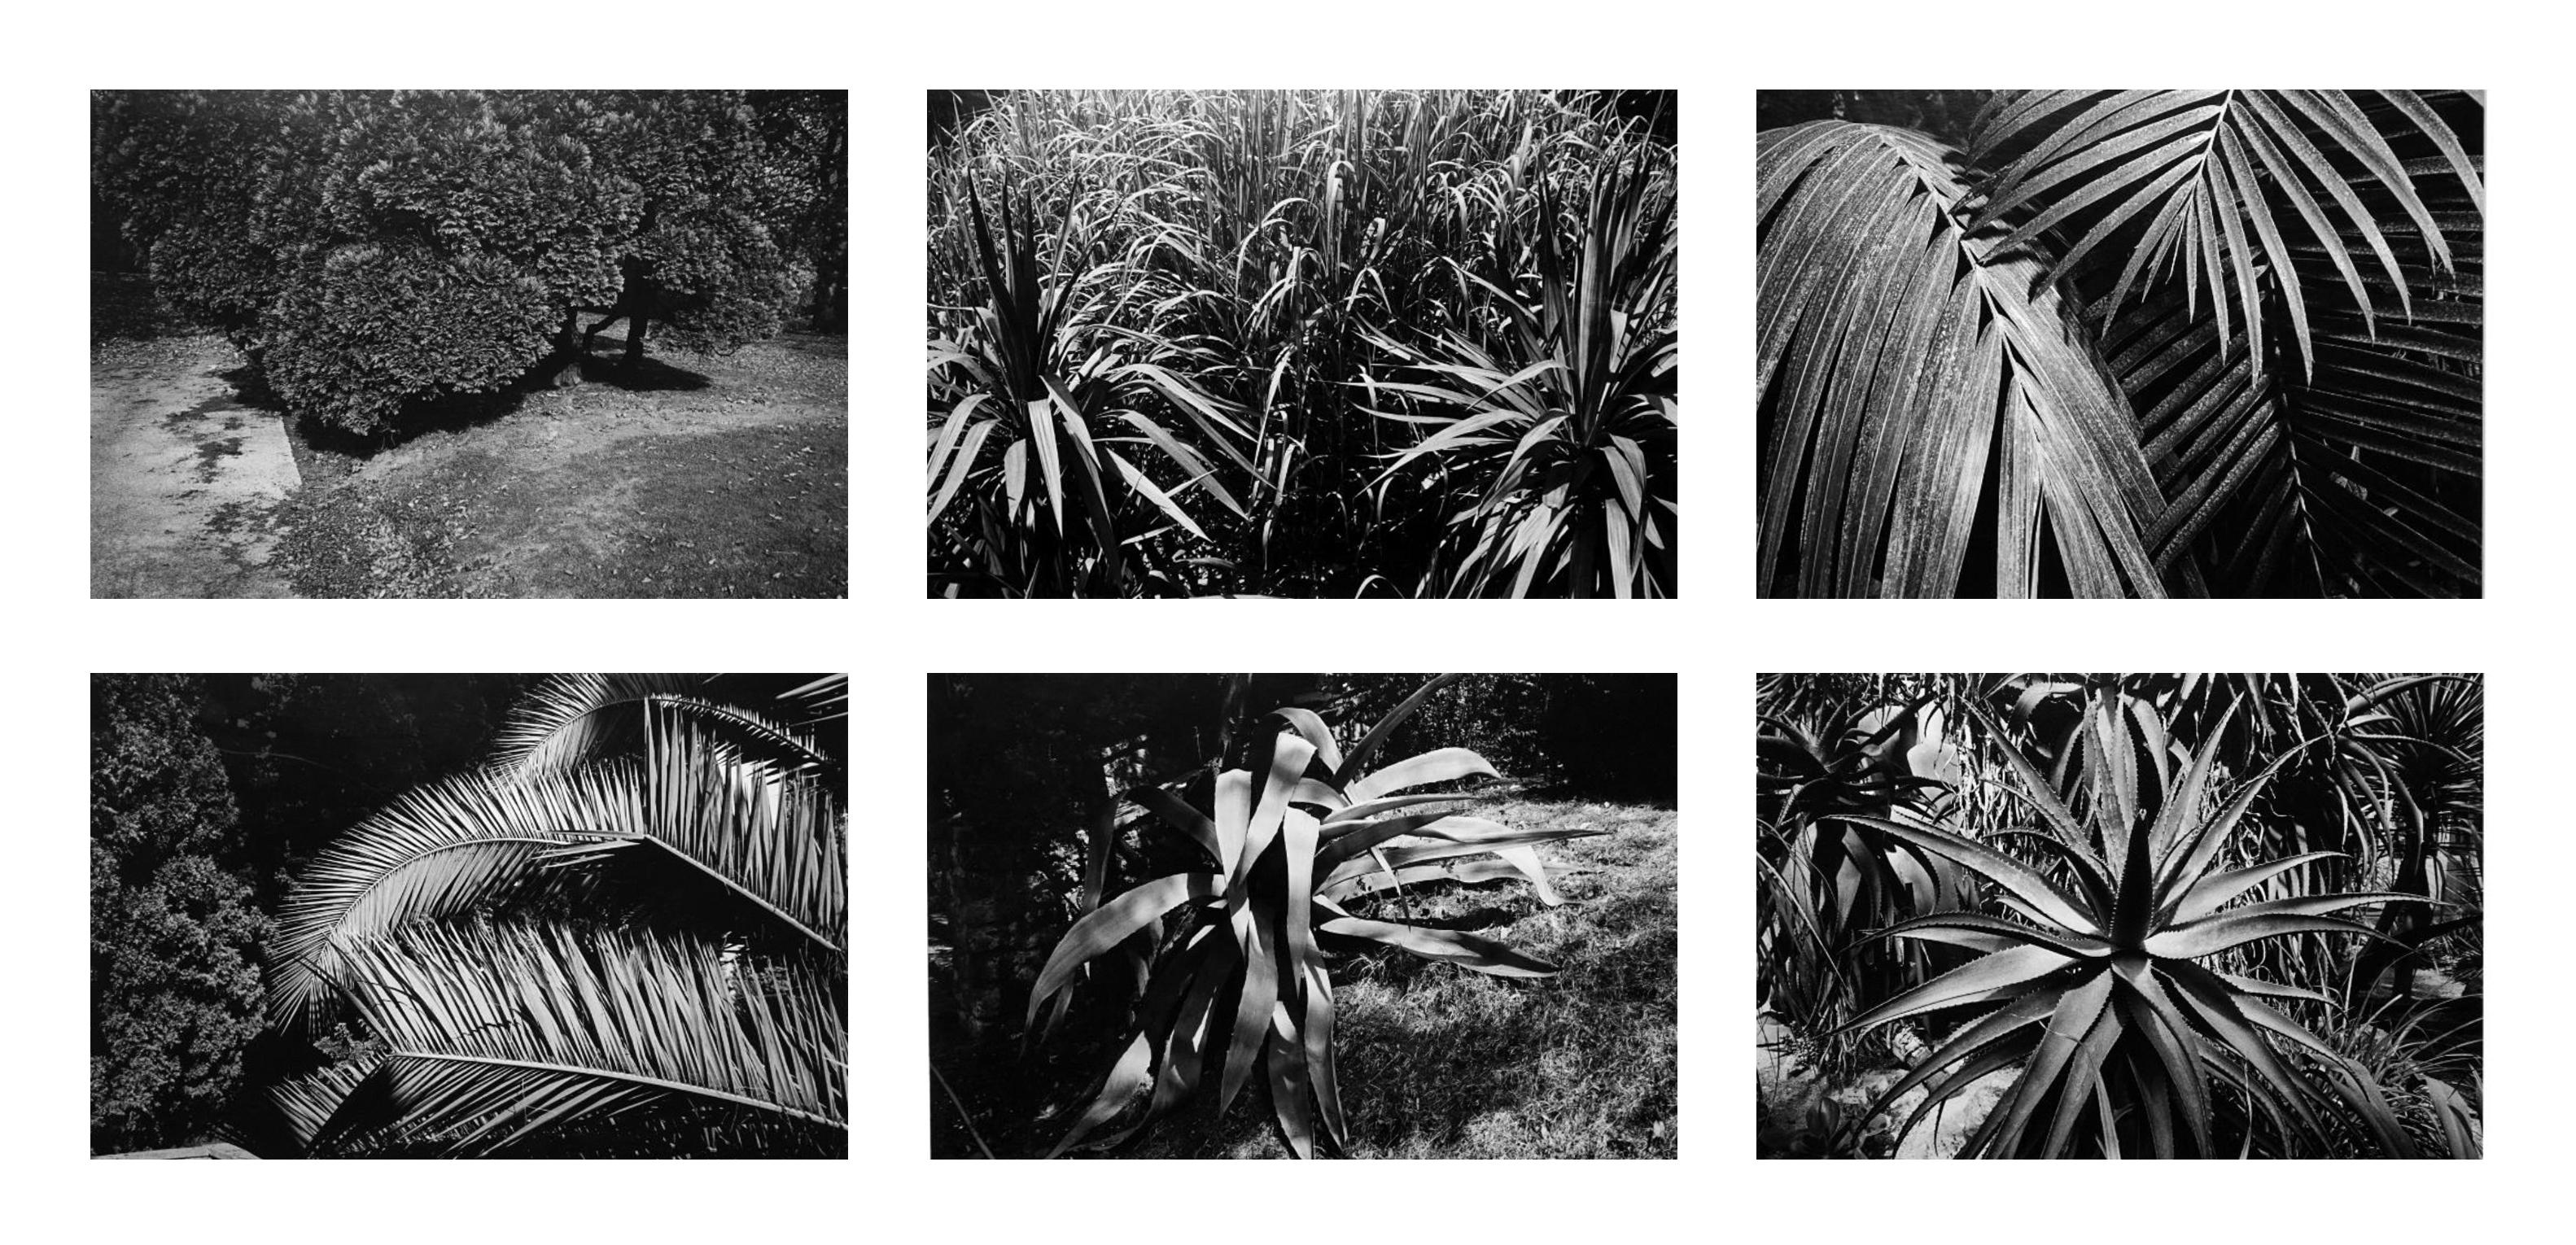 Jardin 1 - Coffret Prestige n° 5 - 1979, photographie minimaliste en noir et blanc